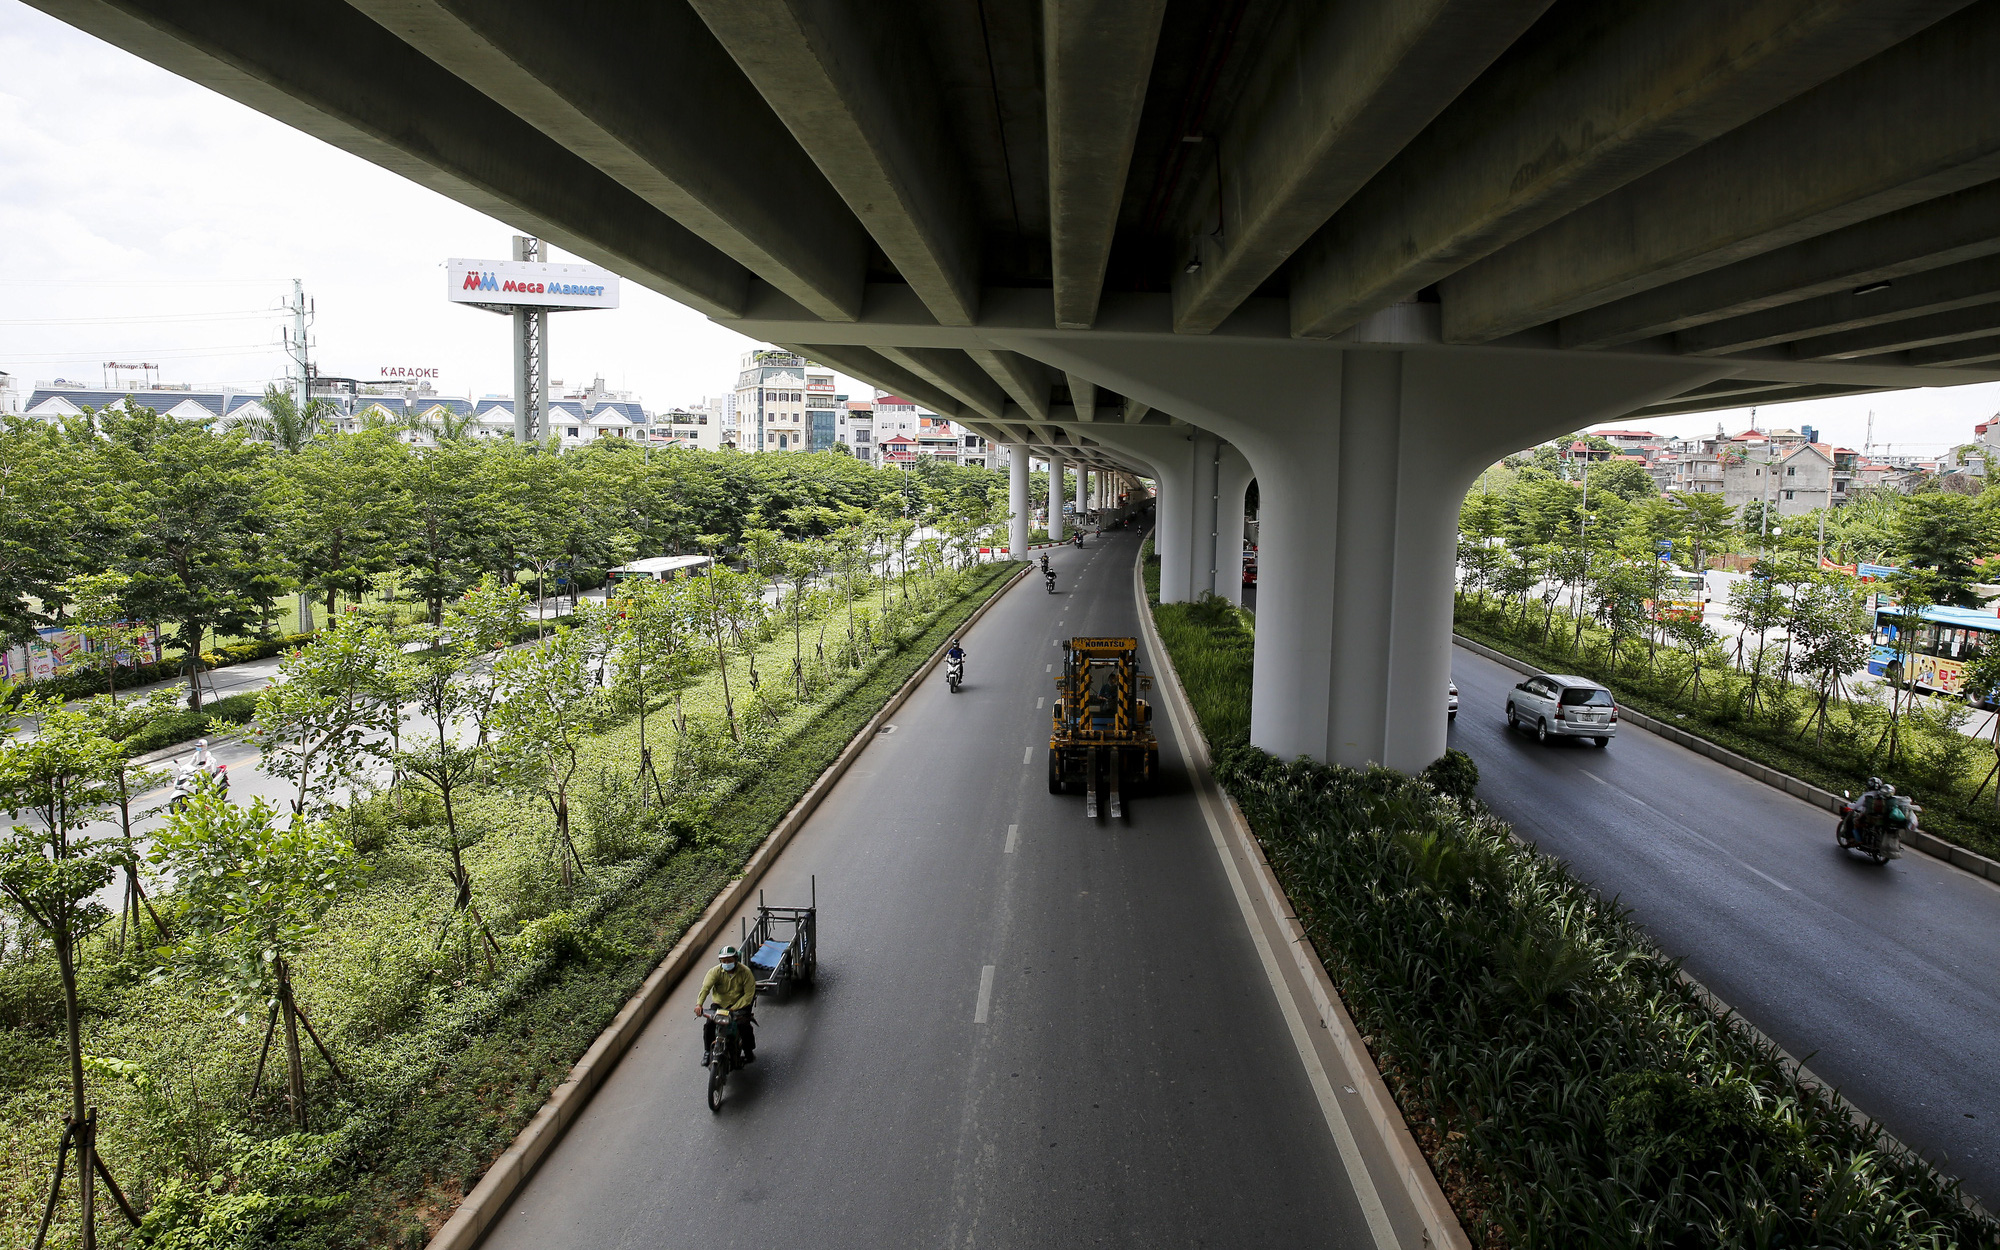 Hà Nội: Con đường trở thành “ốc đảo” mát rượi bởi đường trên cao và cây xanh